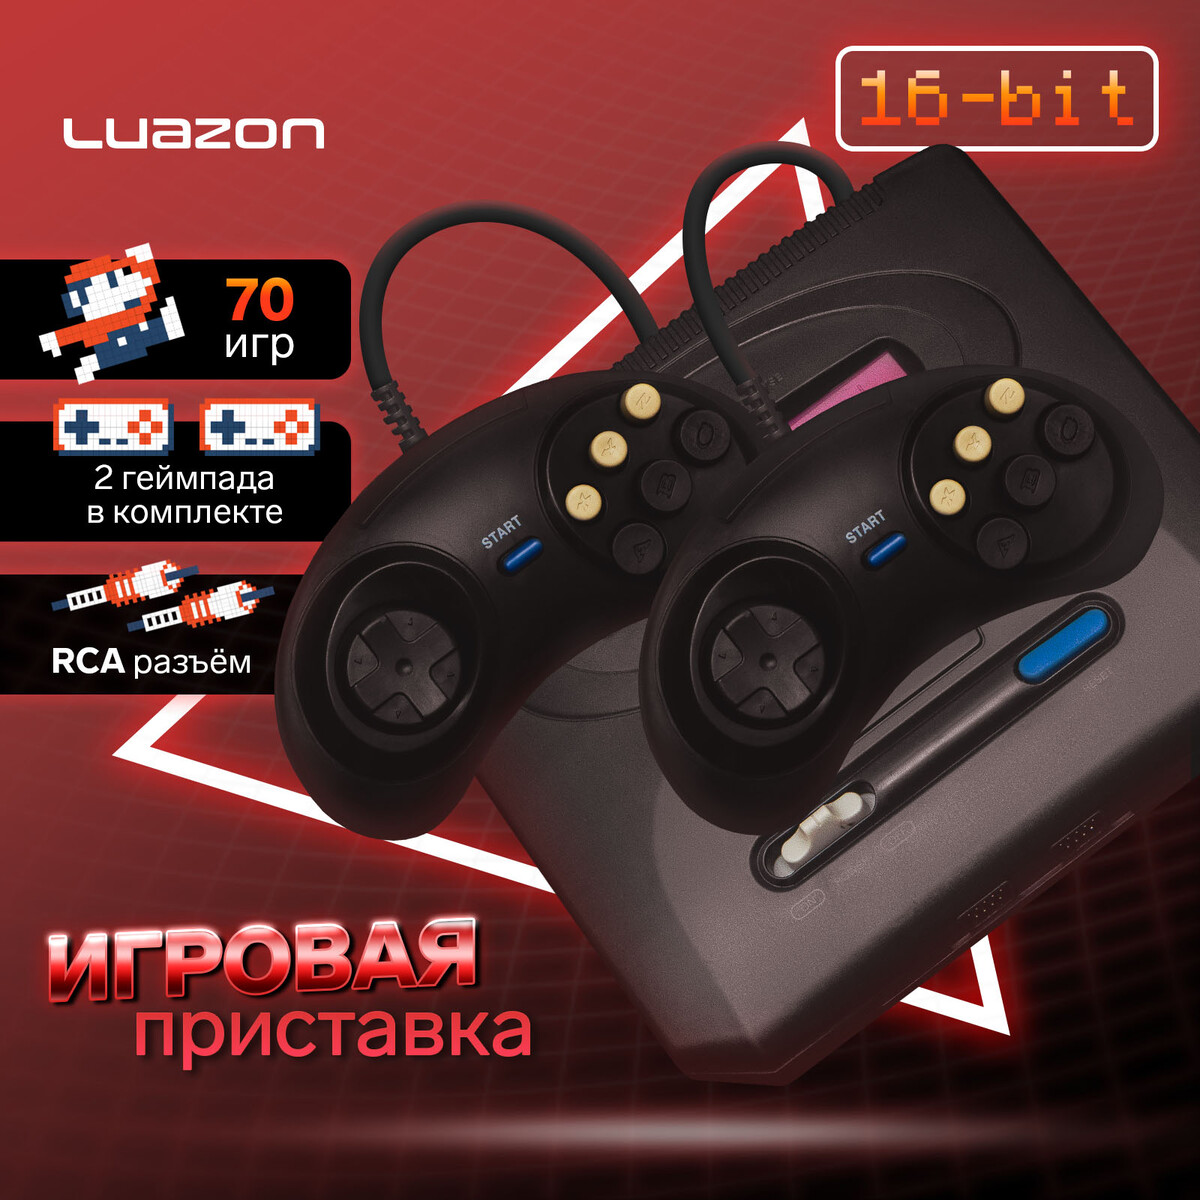 Игровая приставка luazon game-2, 16 бит, в комплекте два джойстика, 70 игр, черная игровая приставка luazon game 1 8 бит в комплекте 2 джойстика и пистолет 22 игры серая